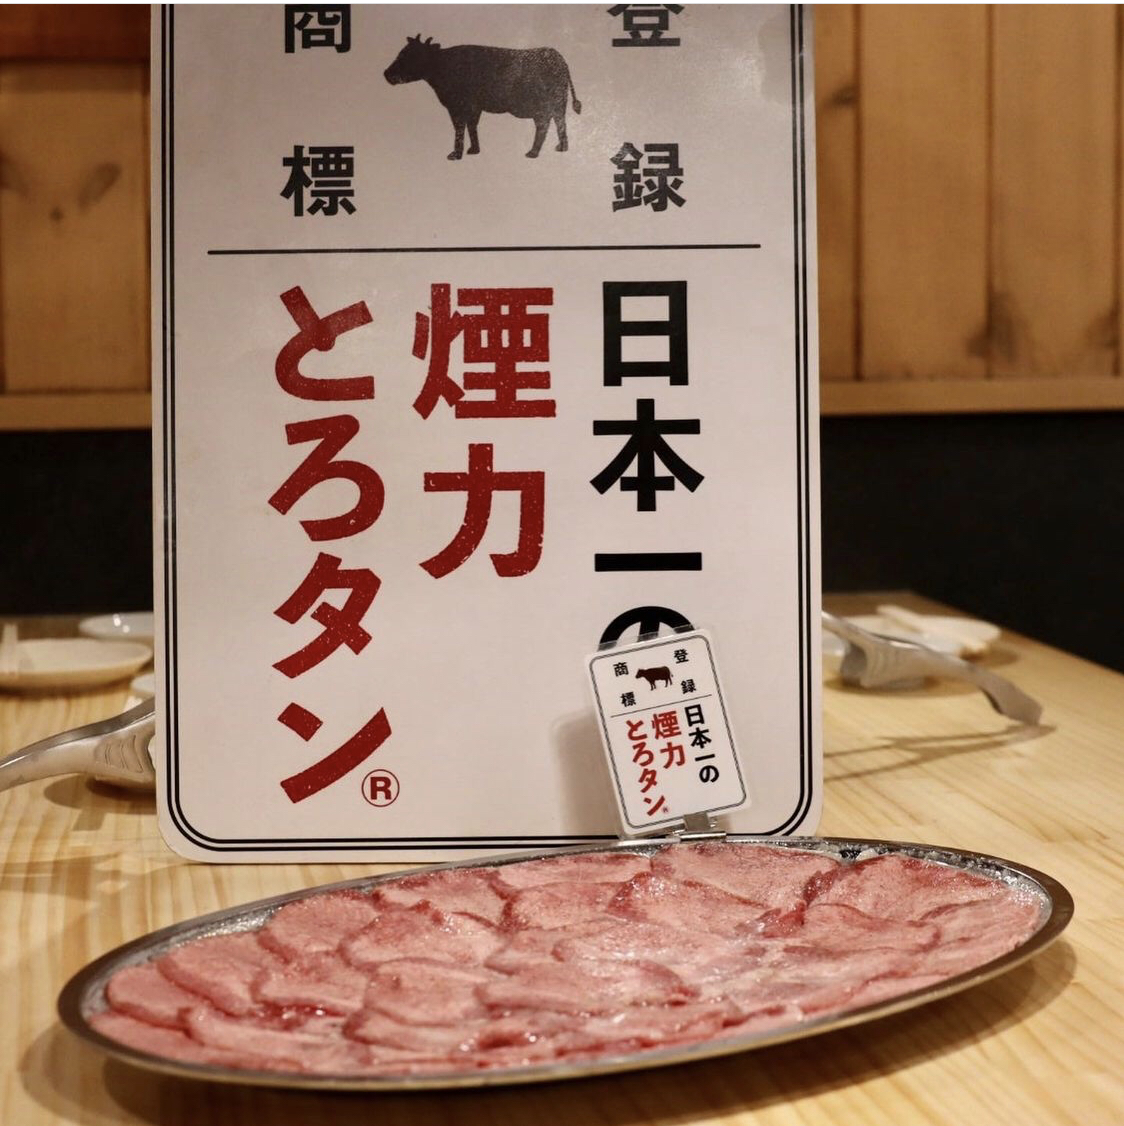 還可以吃烤壽司！13道菜+120分鐘無限暢飲的豐盛宴會套餐3,980日元